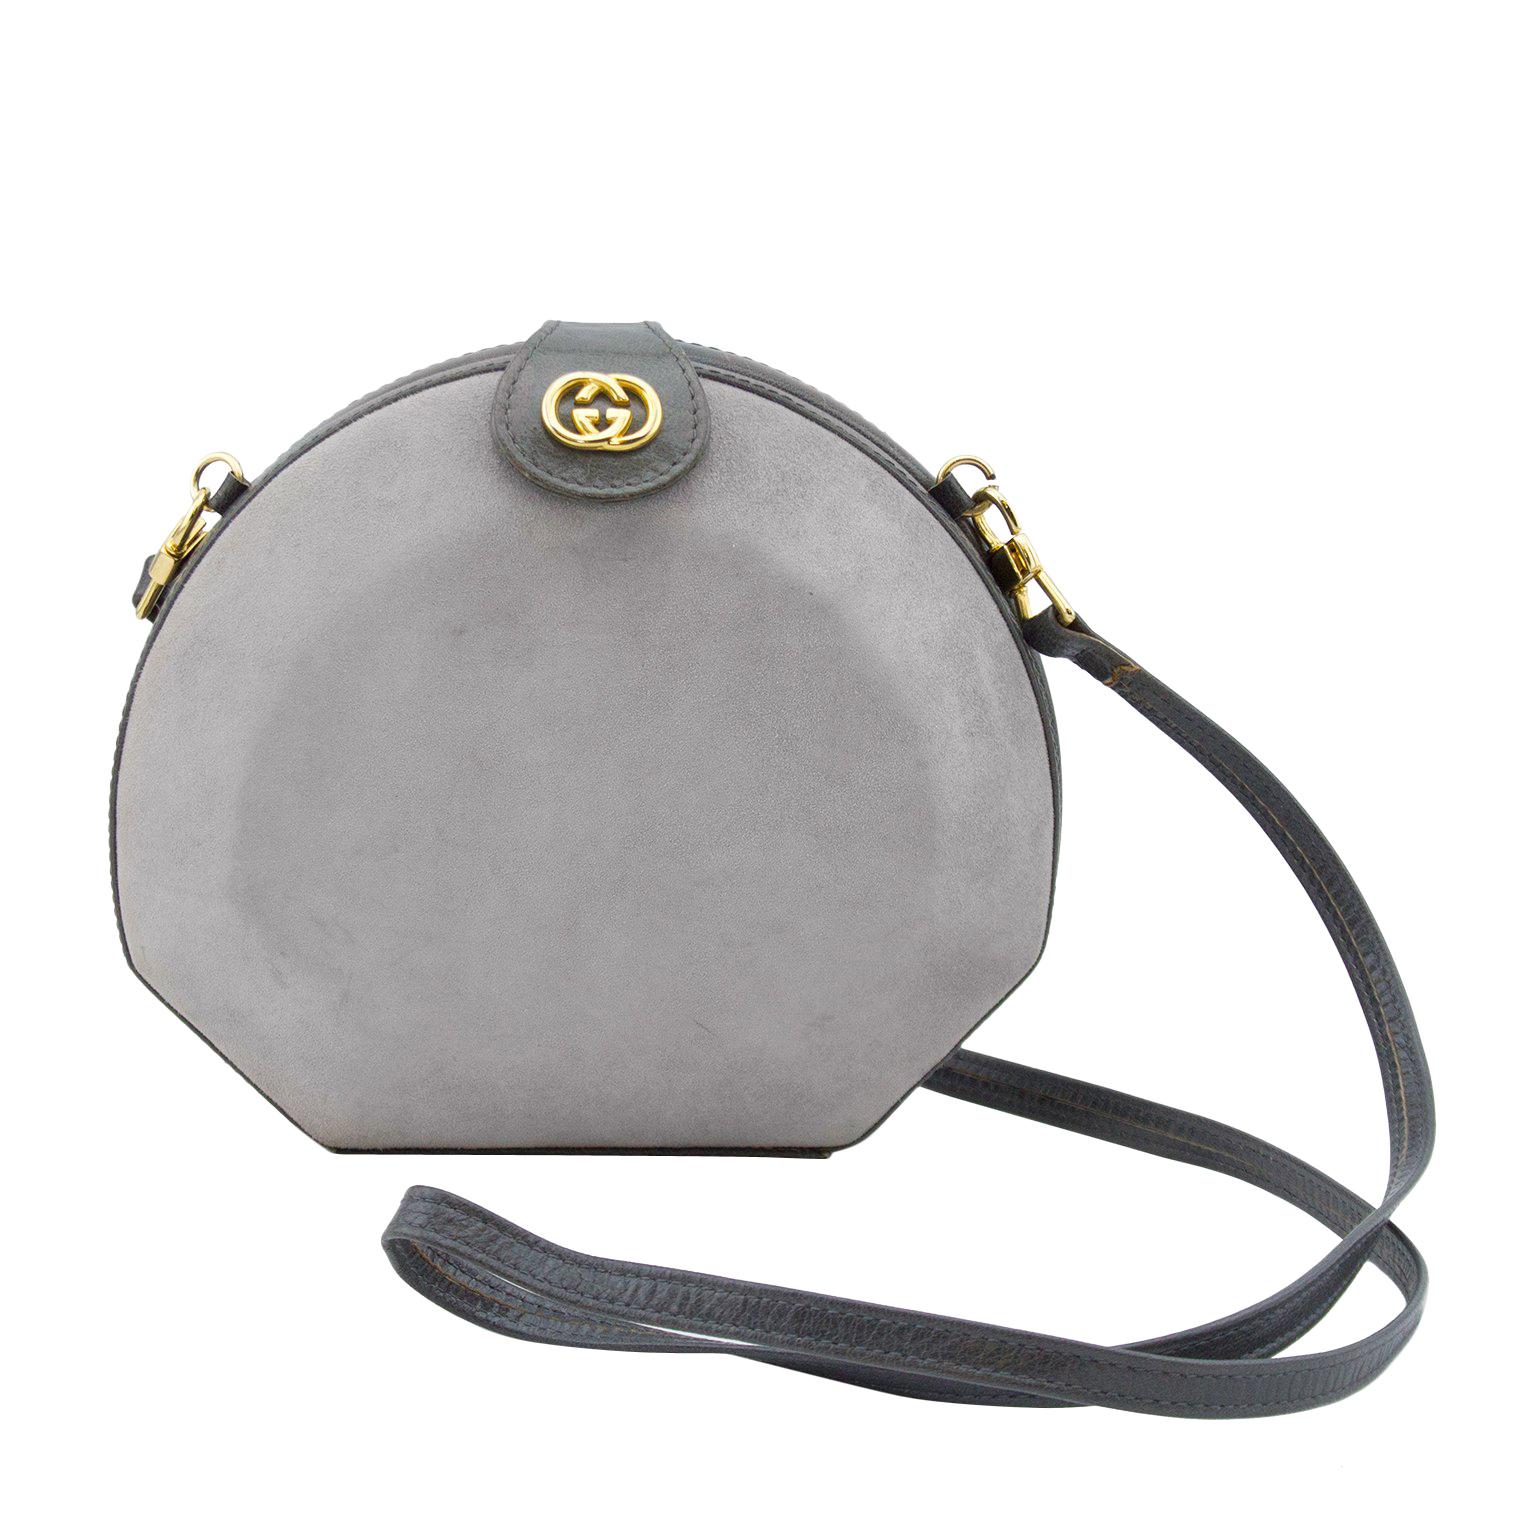 Vintage Retractable Handle Purse Handbag Gray Suede Zip Top Tote Bag Clutch  | eBay